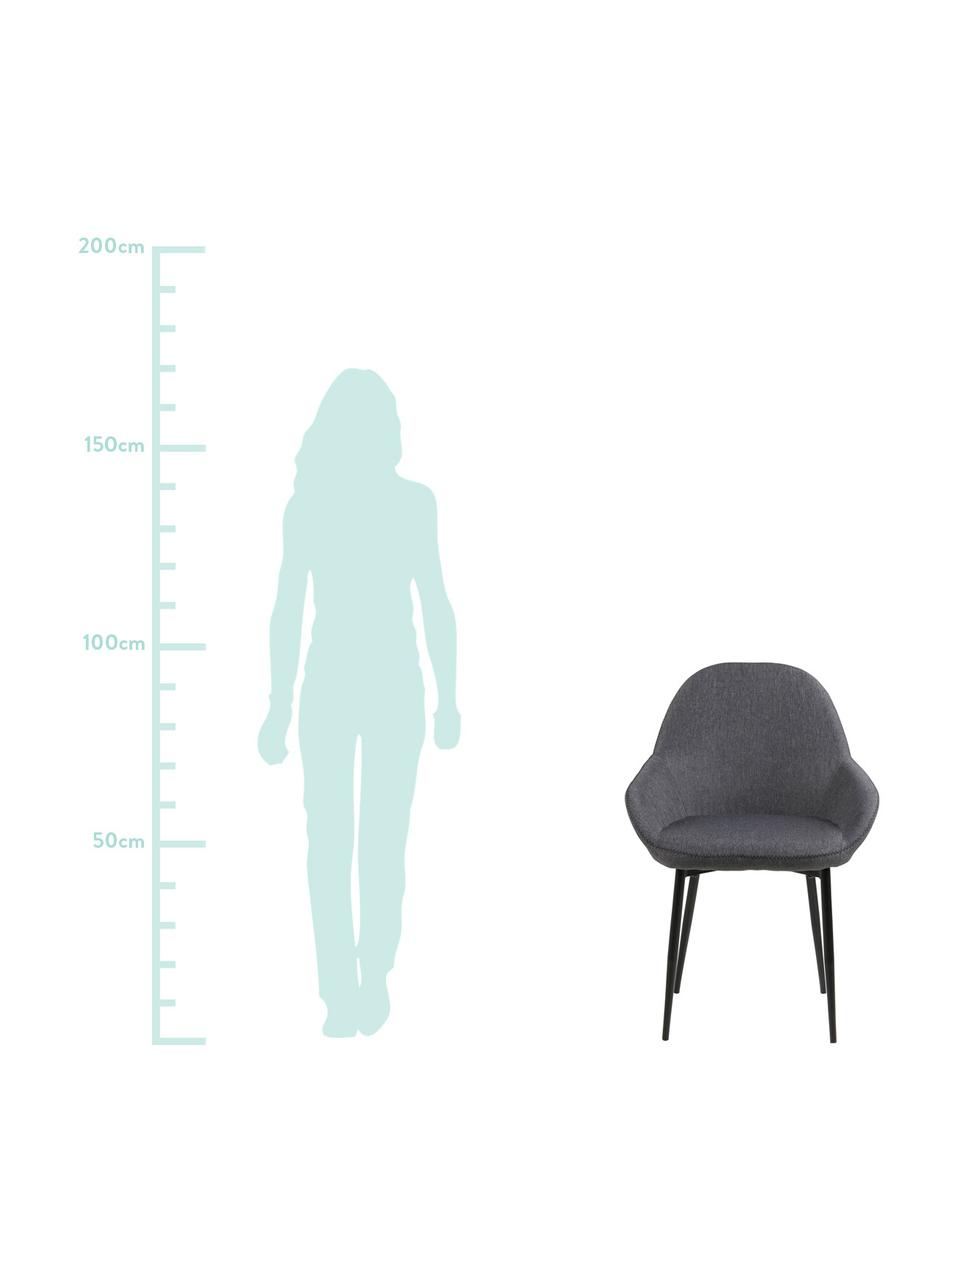 Armlehnstuhl Candis, Bezug: Polyester, Beine: Metall, lackiert, Sitzschale: Sperrholz, Grau, Schwarz, 60 x 85 cm